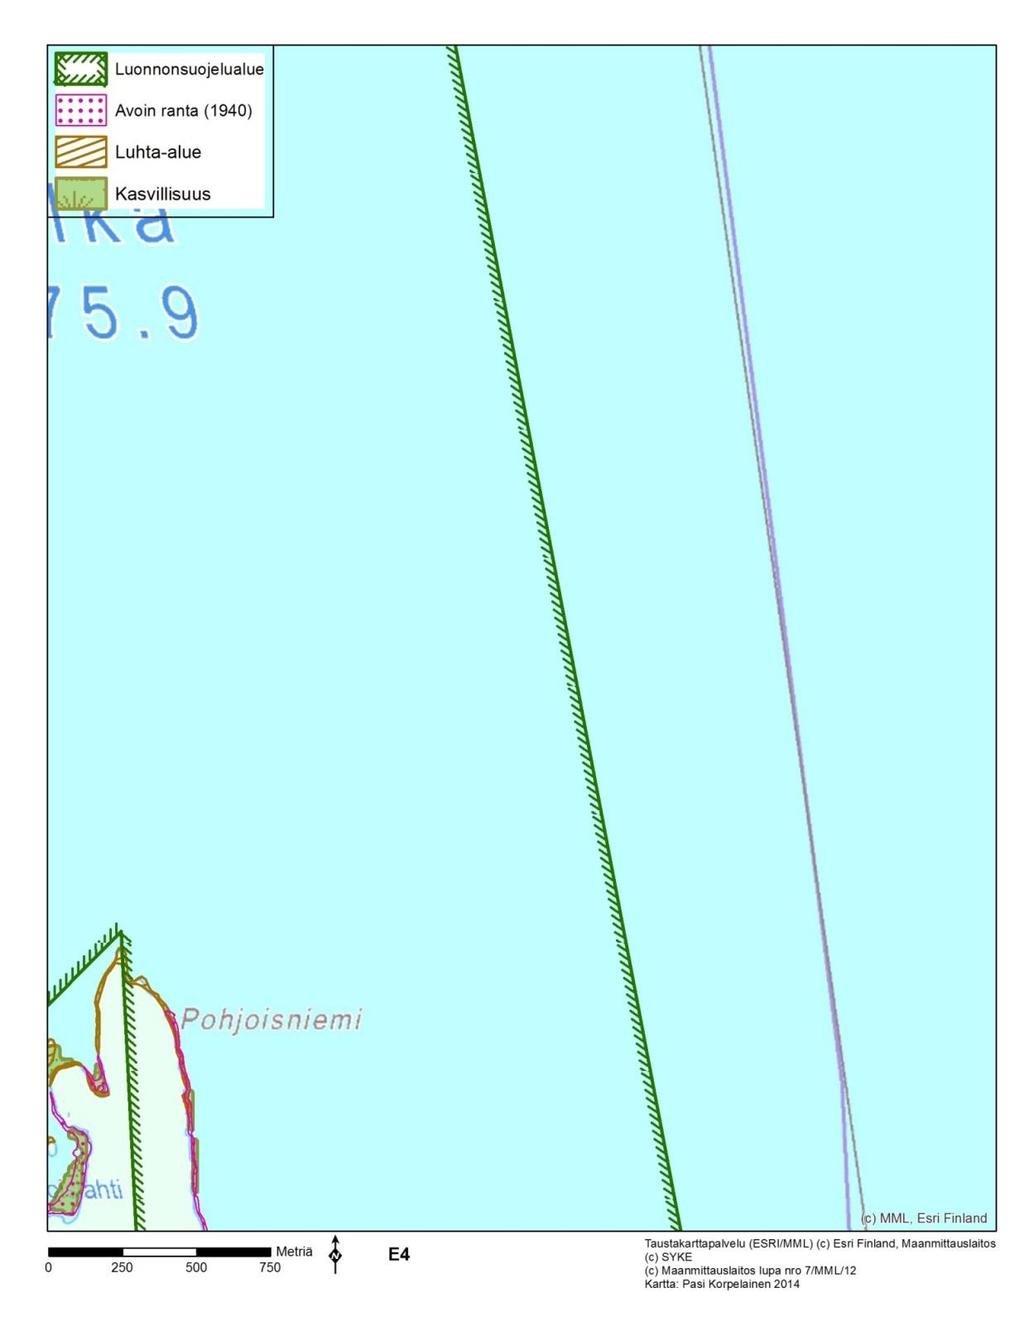 7.5.4 Pesolansaaren kärki (karttalehti E4) Lähes koko karttalehden alue on Oriveden-Pyhäselän saaristot FI0700018 (SCI)-suojelualuetta